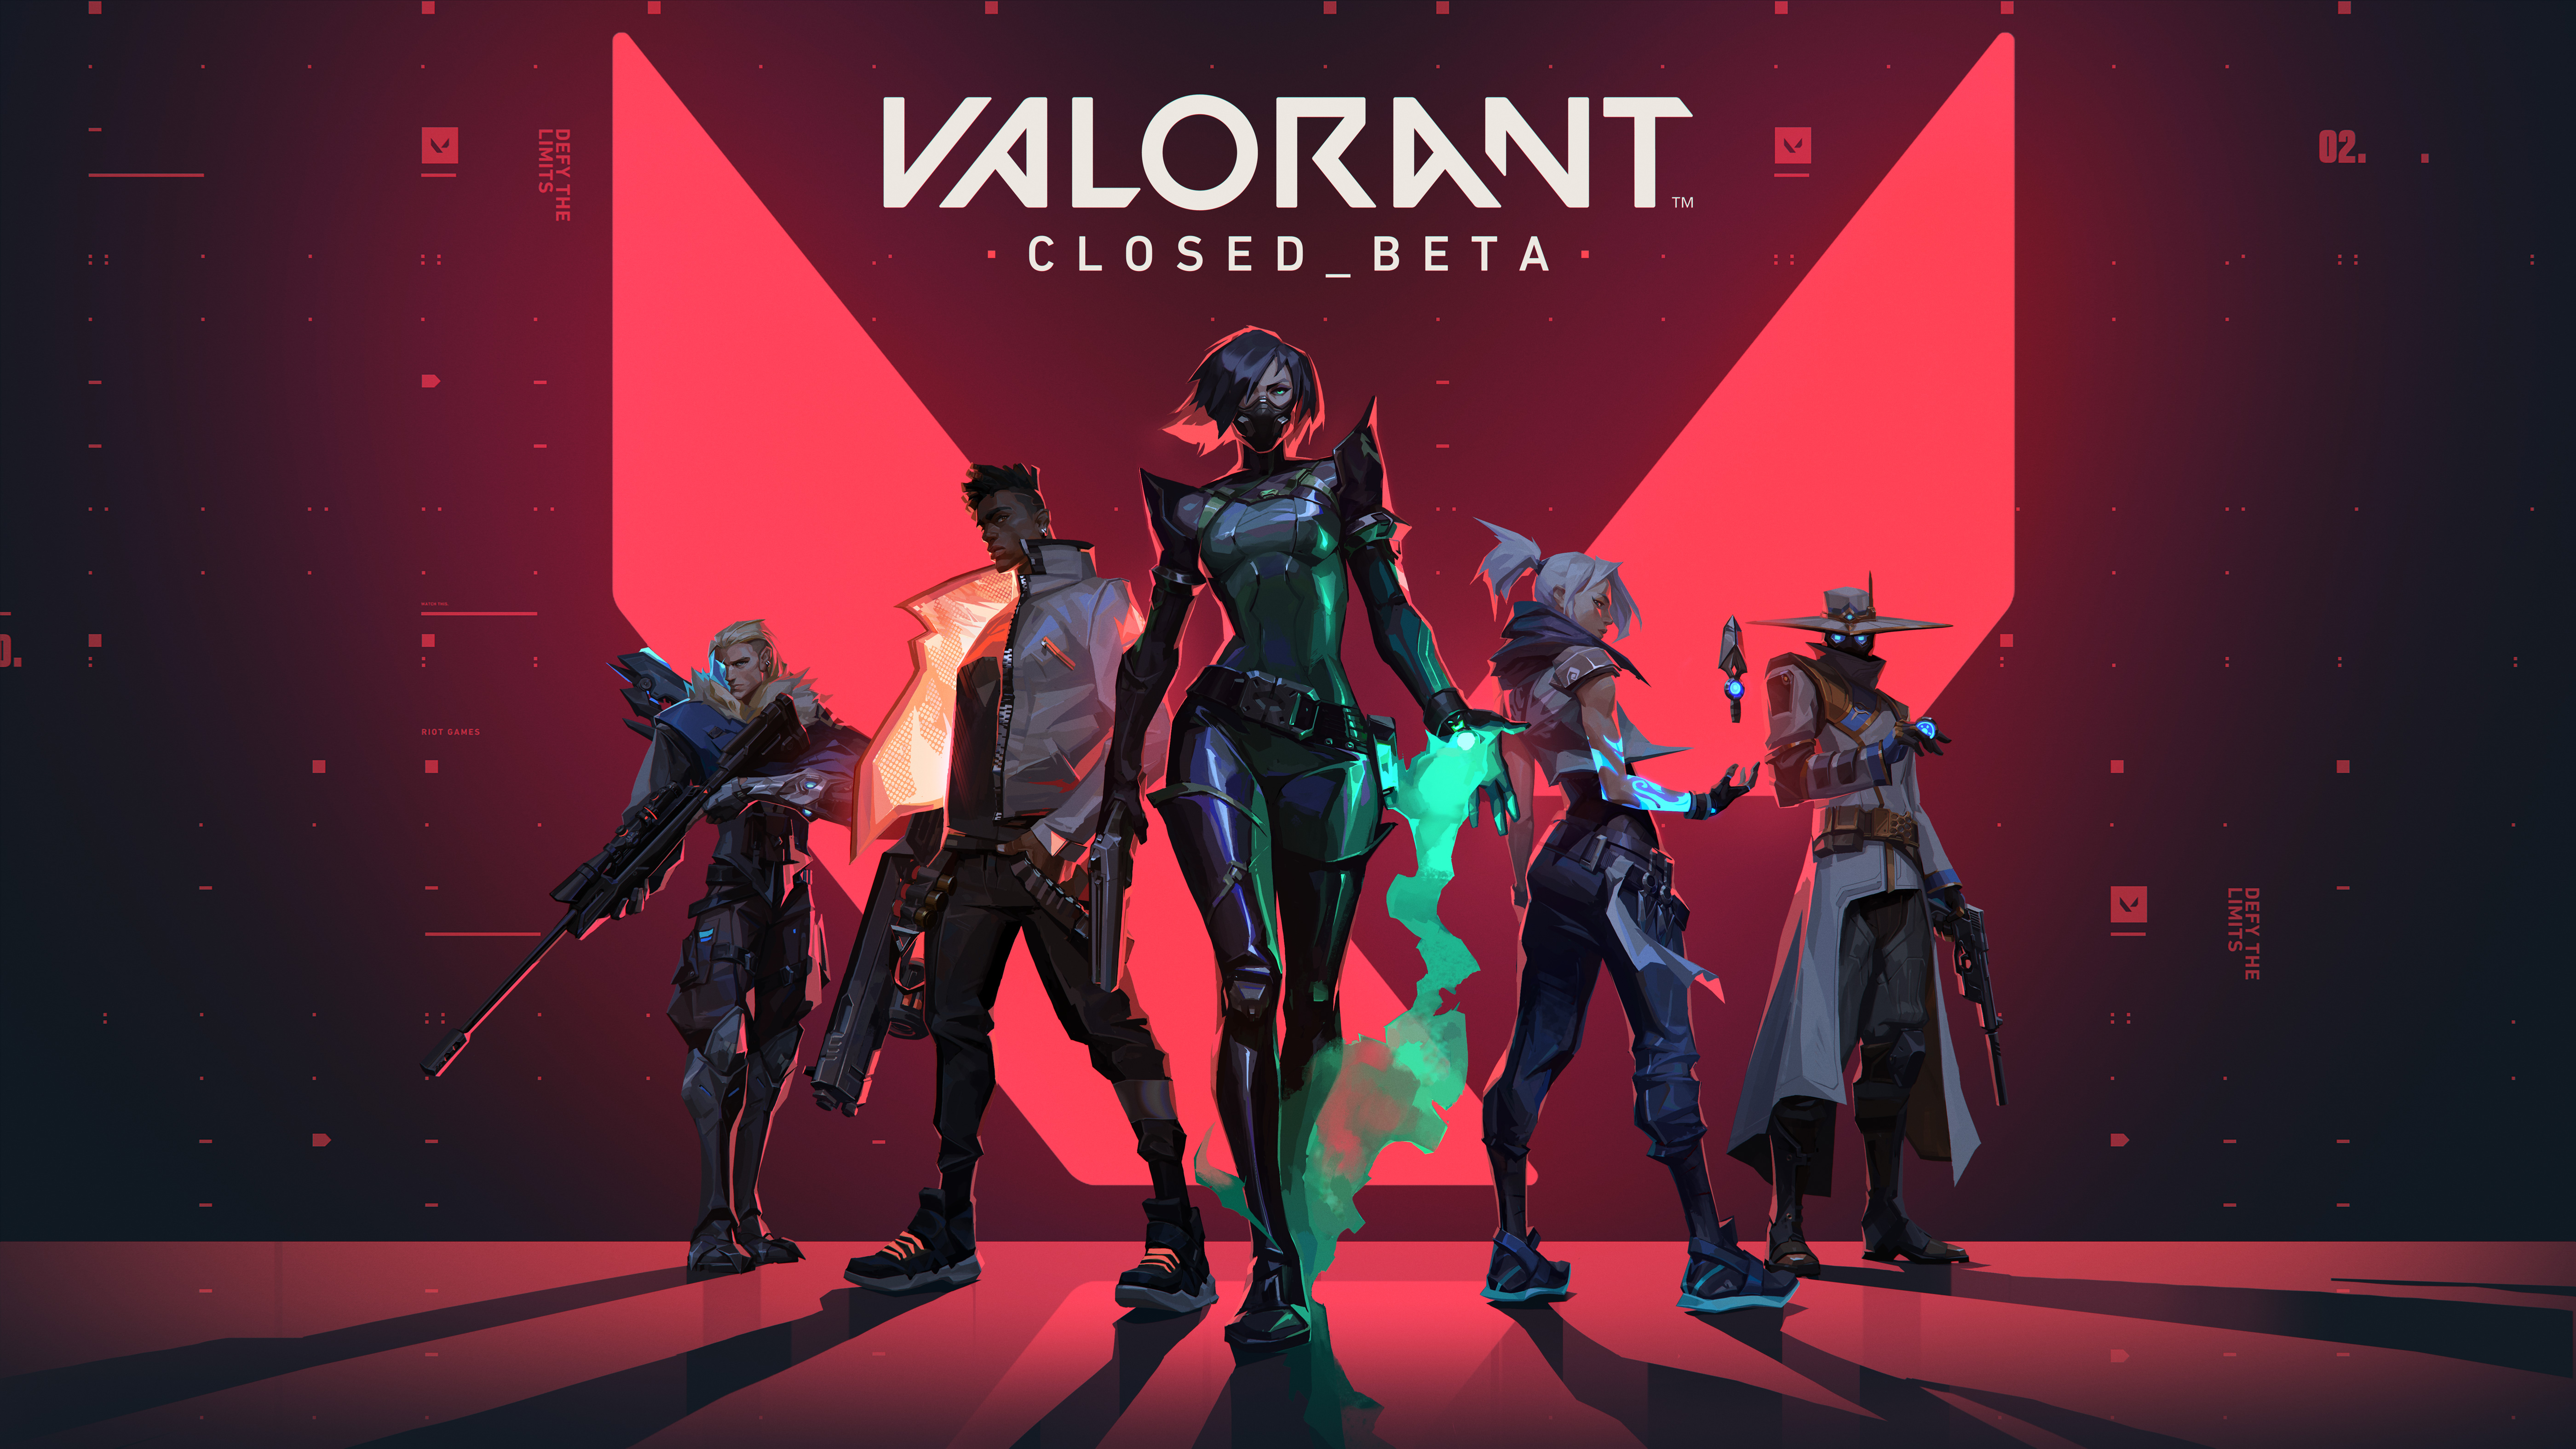 Valorant Closed Beta The Tactical Hero Shooter I Never Knew I